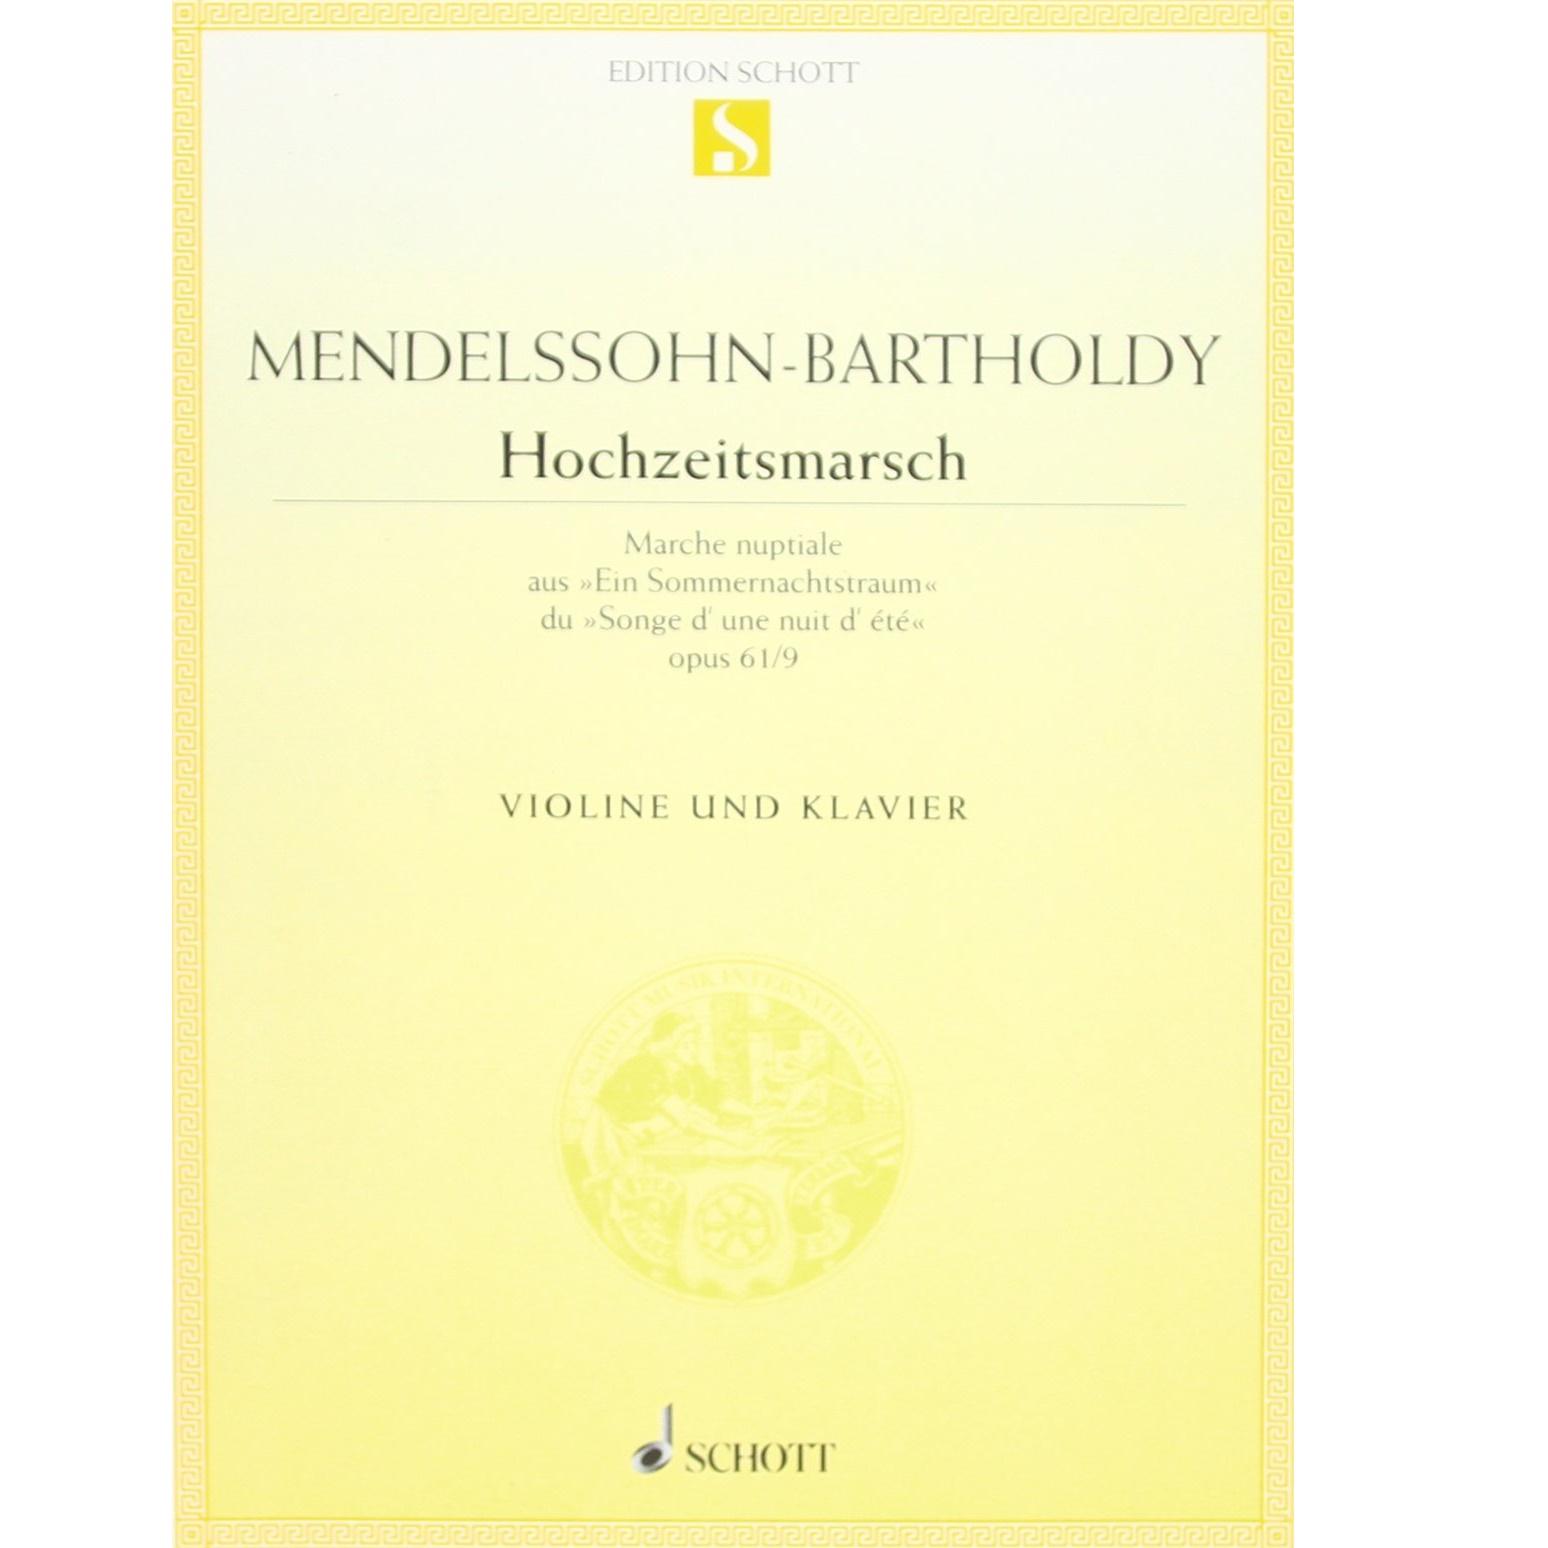 Mendelssohn - Bartholdy Hochzeitsmarsch Violine und klavier - Schott